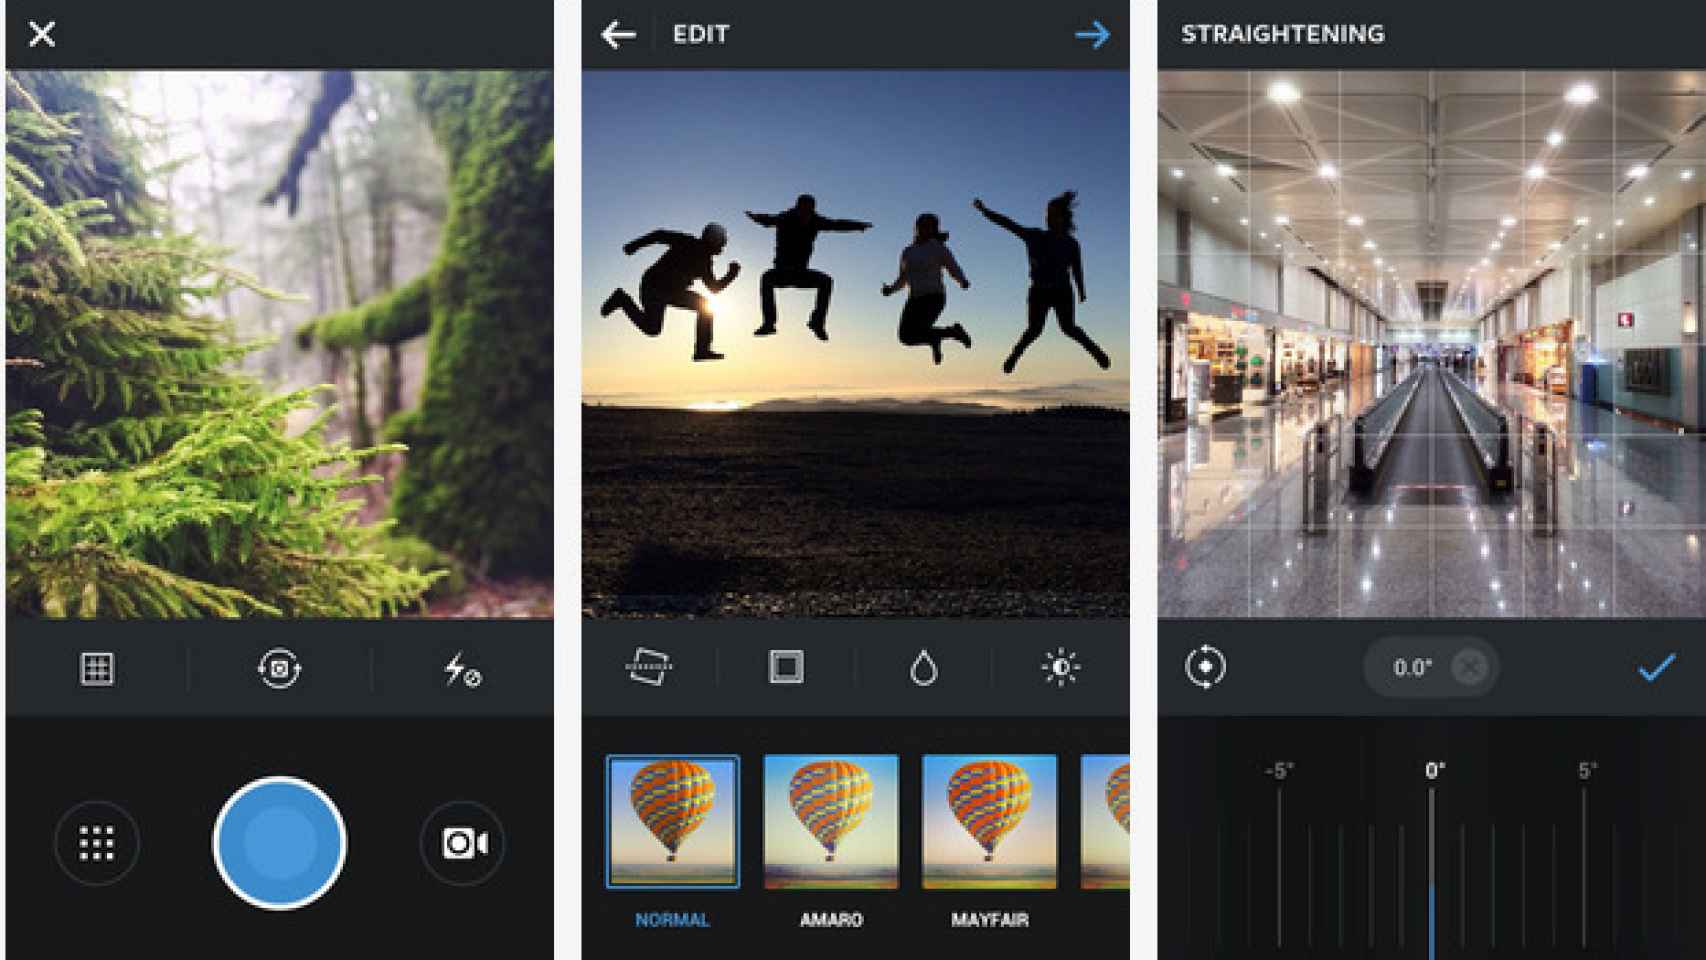 Instagram para Android procesa peor las imágenes y con menos calidad que en iOS